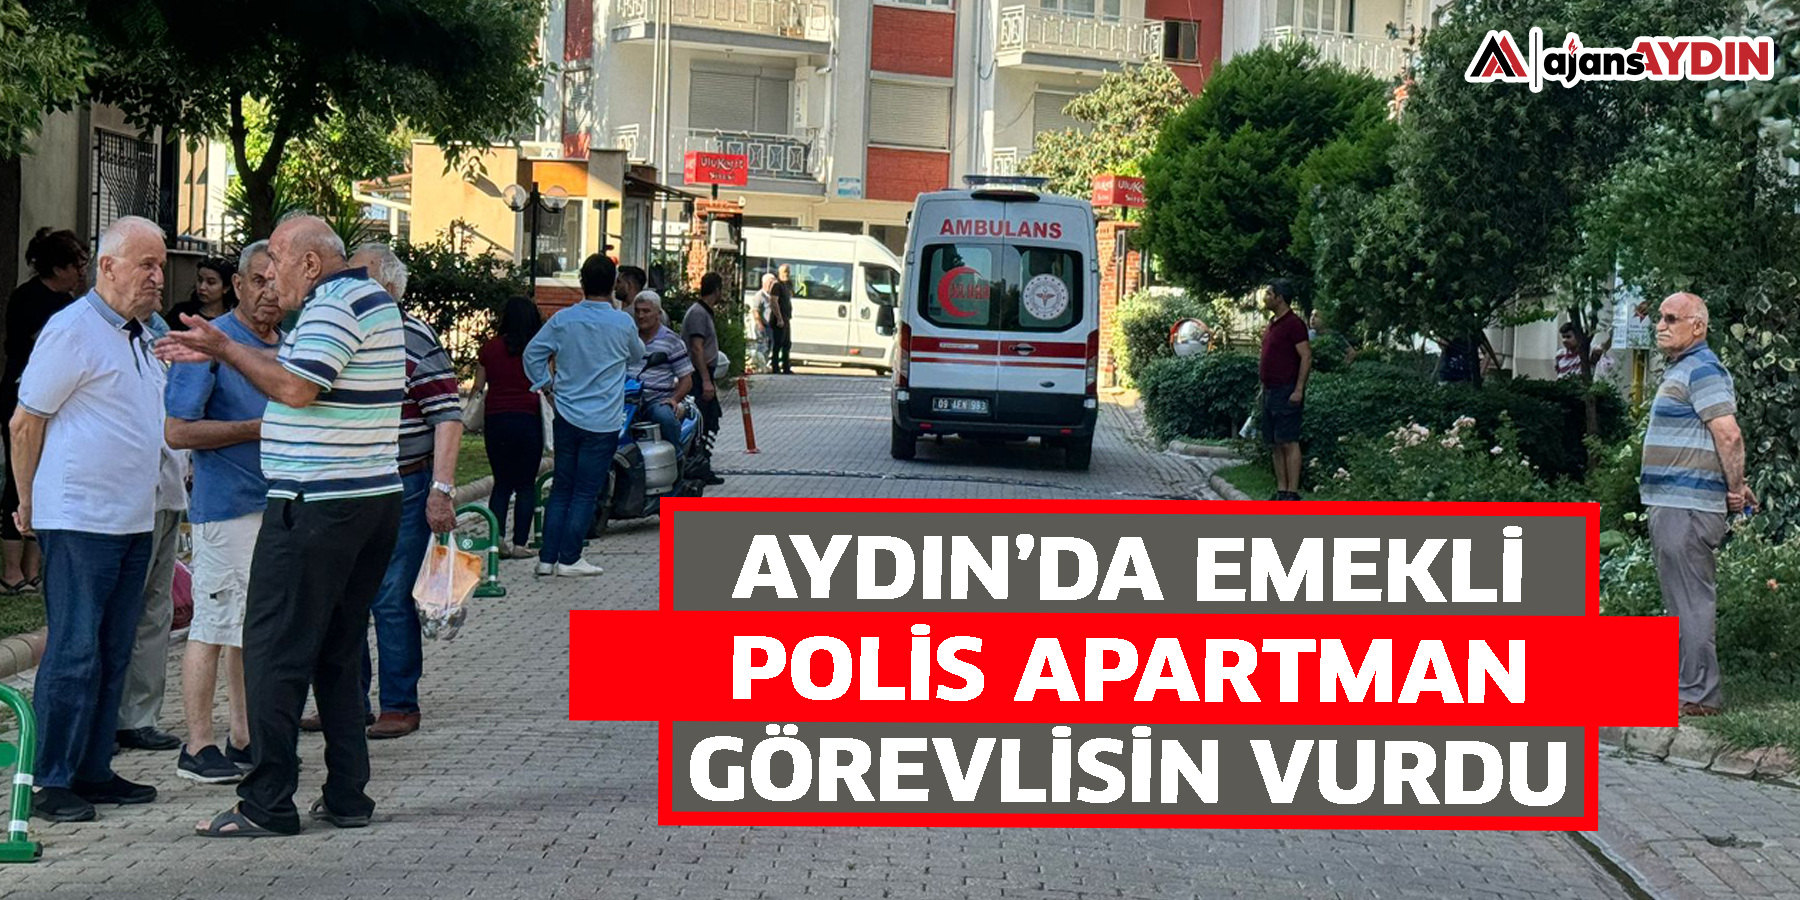 Aydın’da emekli polis apartman görevlisin vurdu